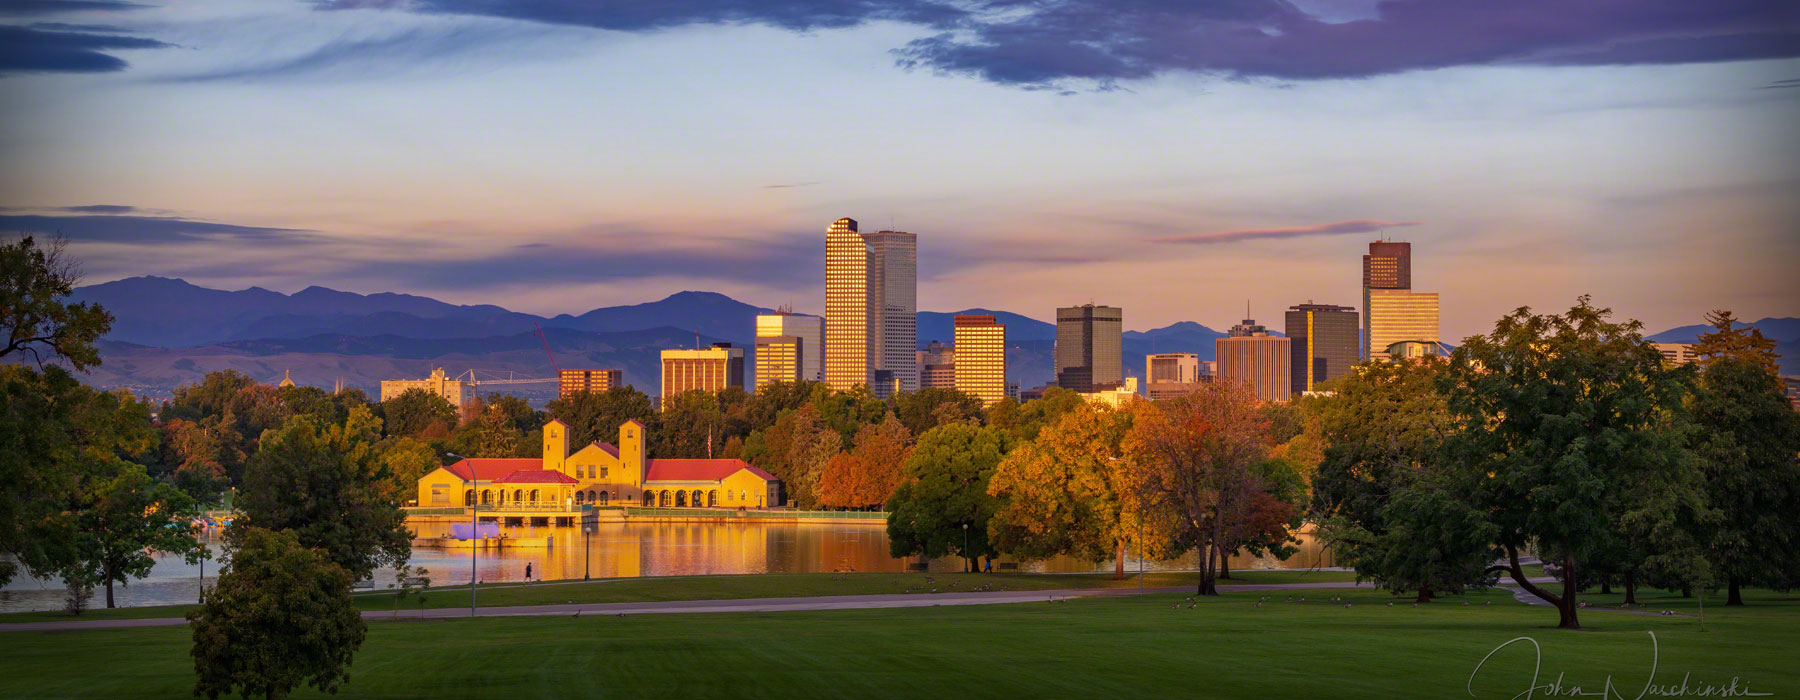 Photos of Denver Colorado Skyline from City Park at Sunrise